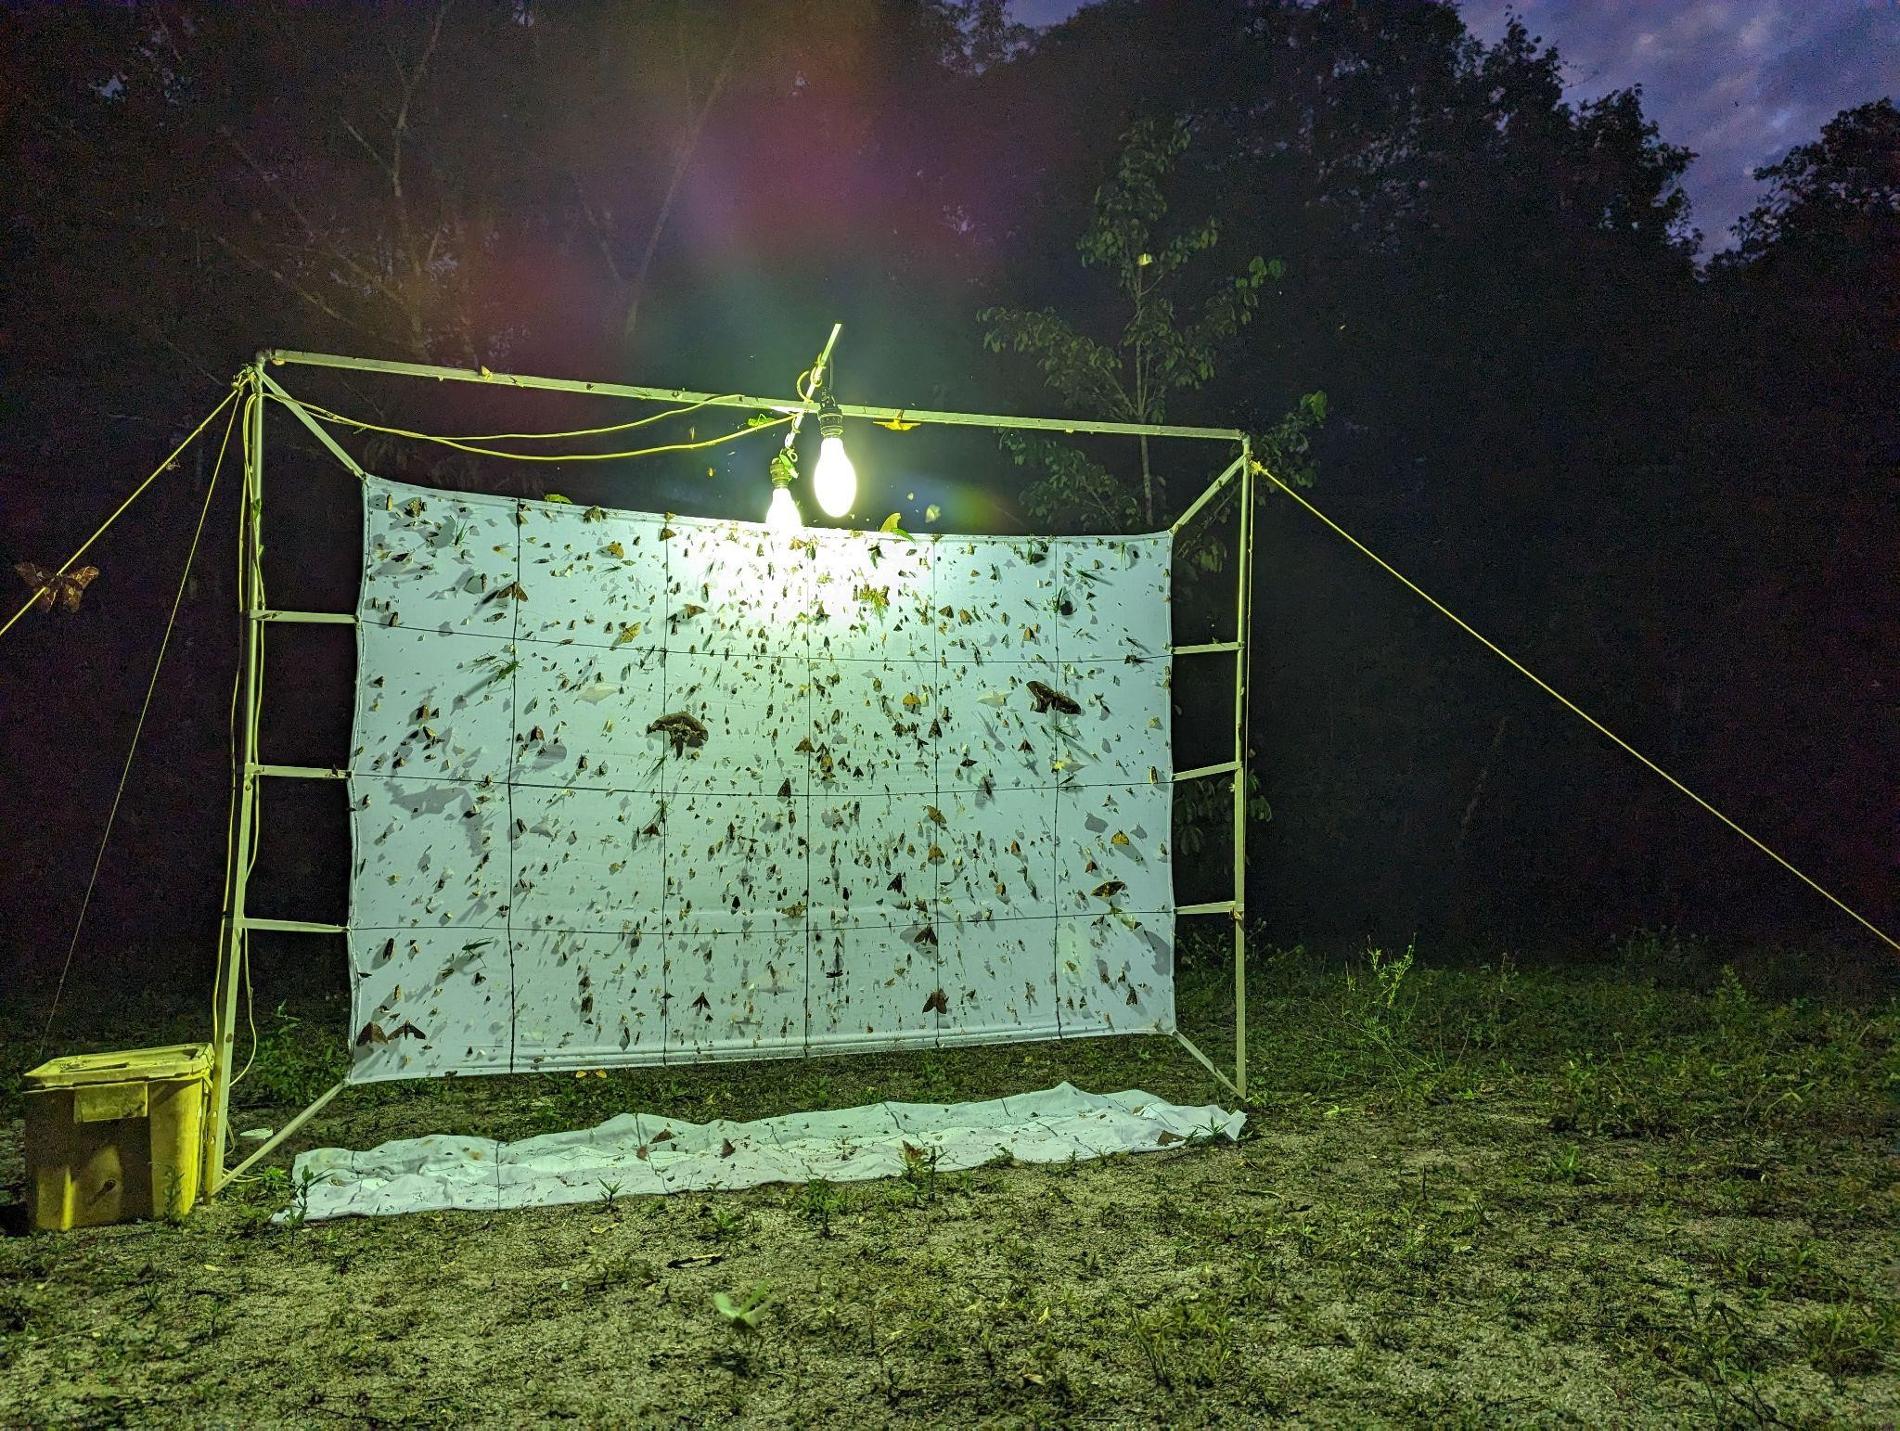 Drap blanc éclairé pour attirer les insectes nocturnes avec des quadrillages permettant de délimiter des zones de comptage d’insectes © Manon Ghislain